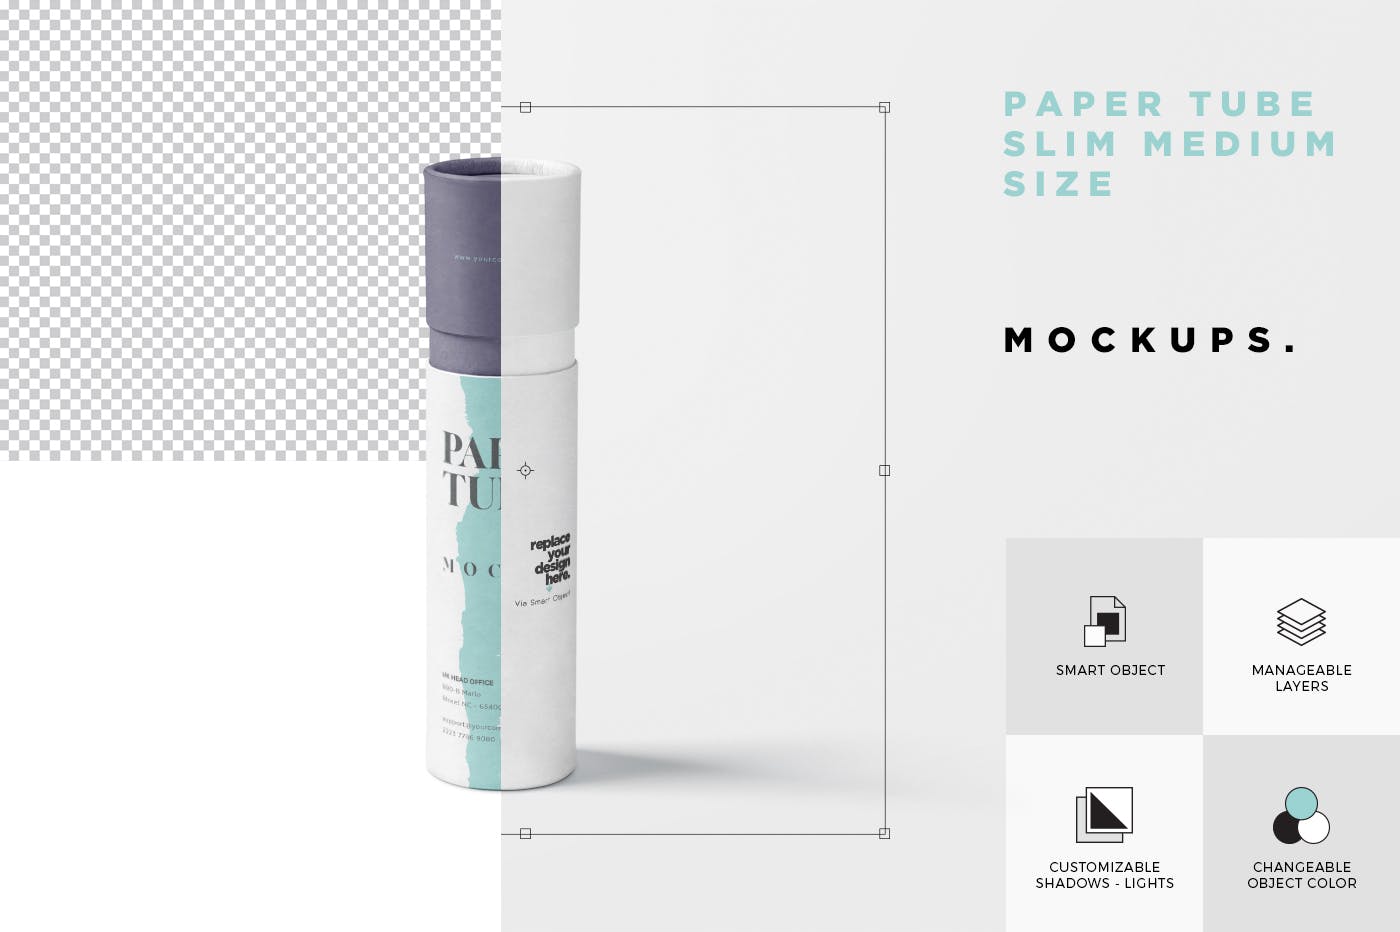 长纸管包装外观设计16设计网精选模板 Paper Tube Mockup Set – Slim Medium Size插图(6)